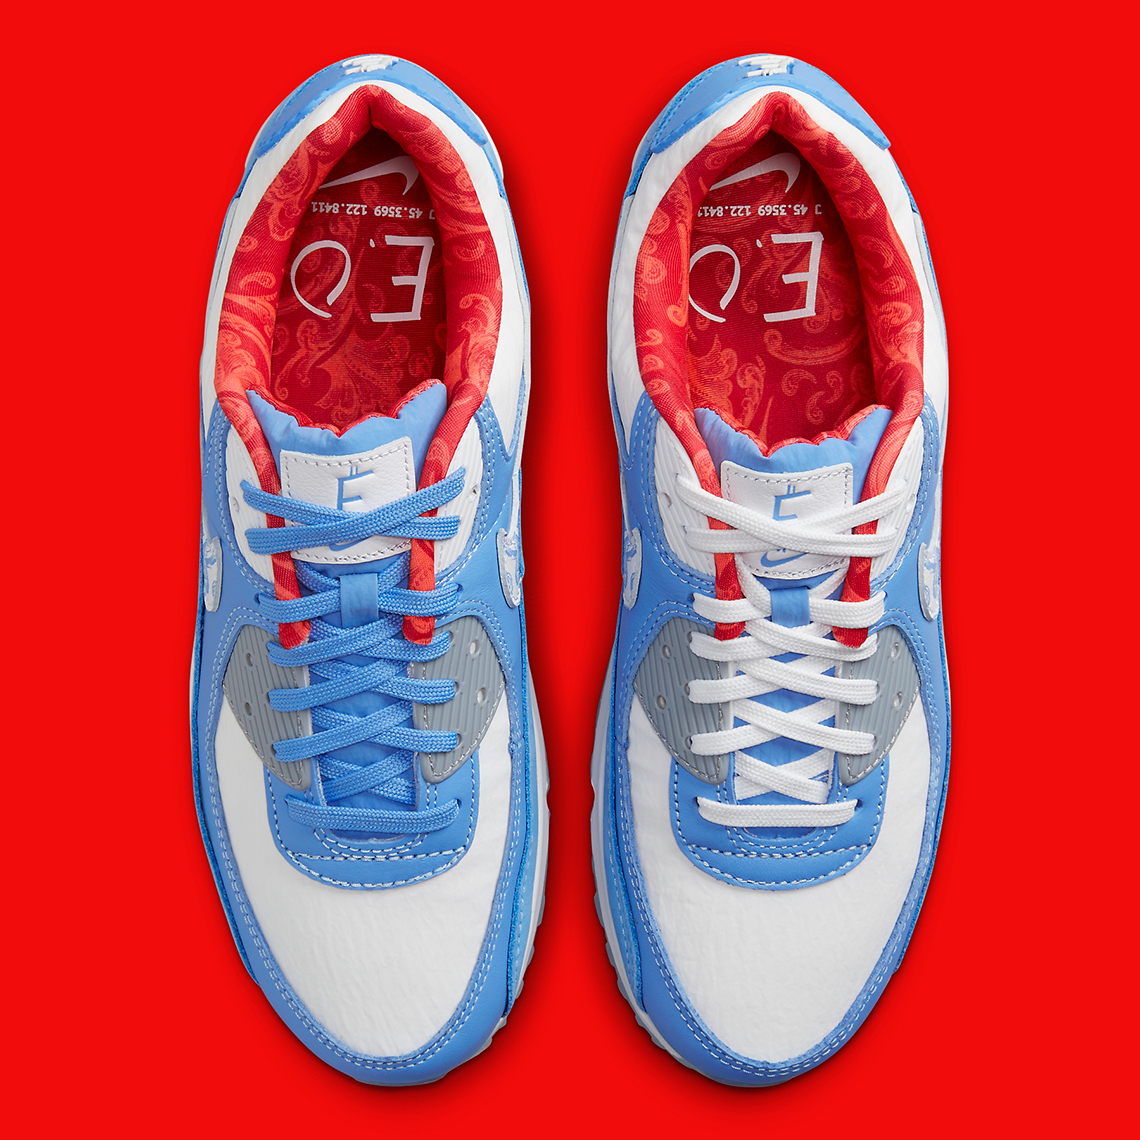 Nike Air Jordan Backboard 11 Low UNC Gr 90 Doernbecher Fd9710 400 Release Date 8